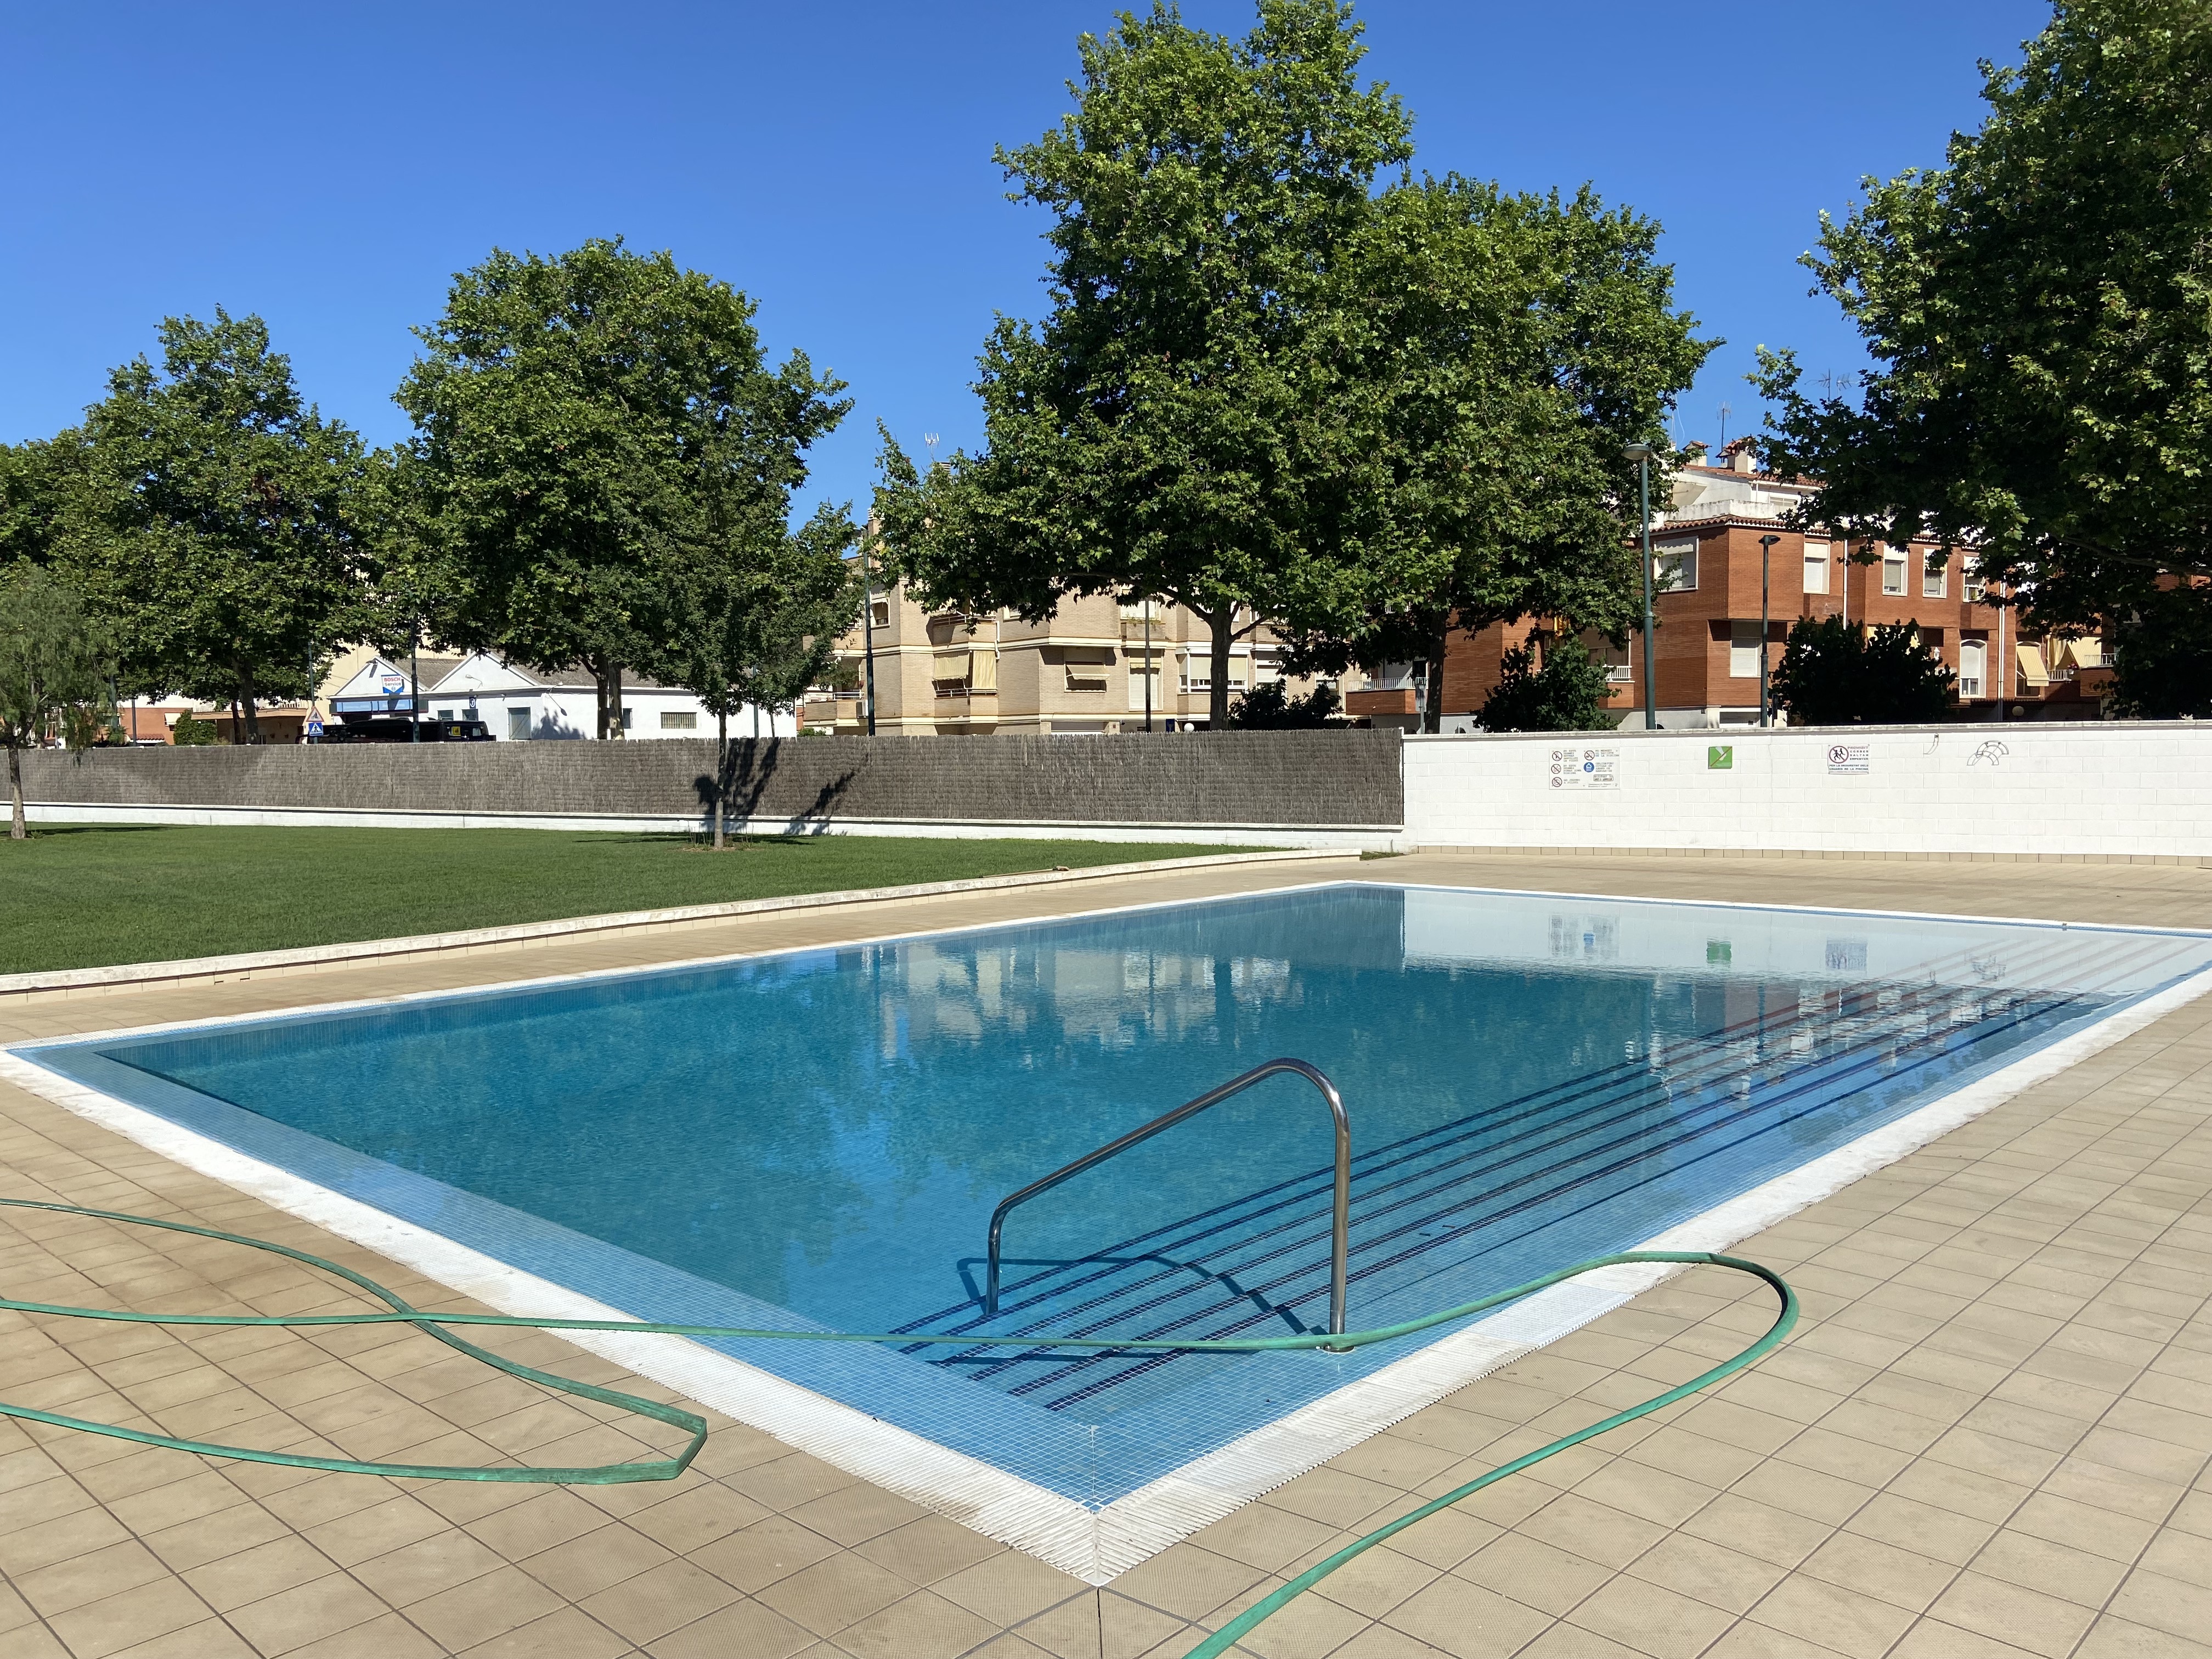 La piscina municipal obrirà el pròxim 1 de juliol